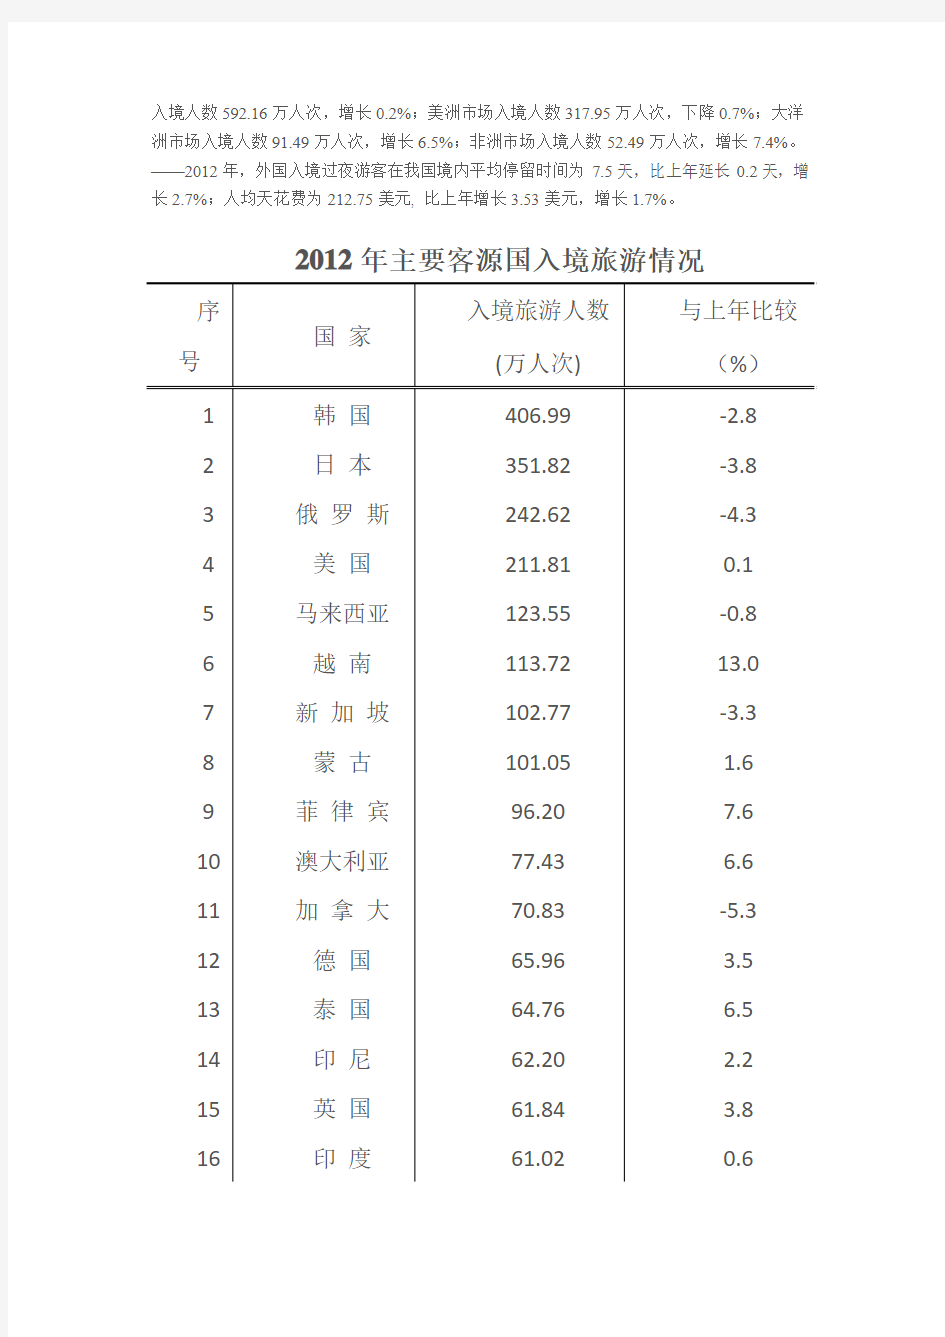 2012年中国旅游业统计公报